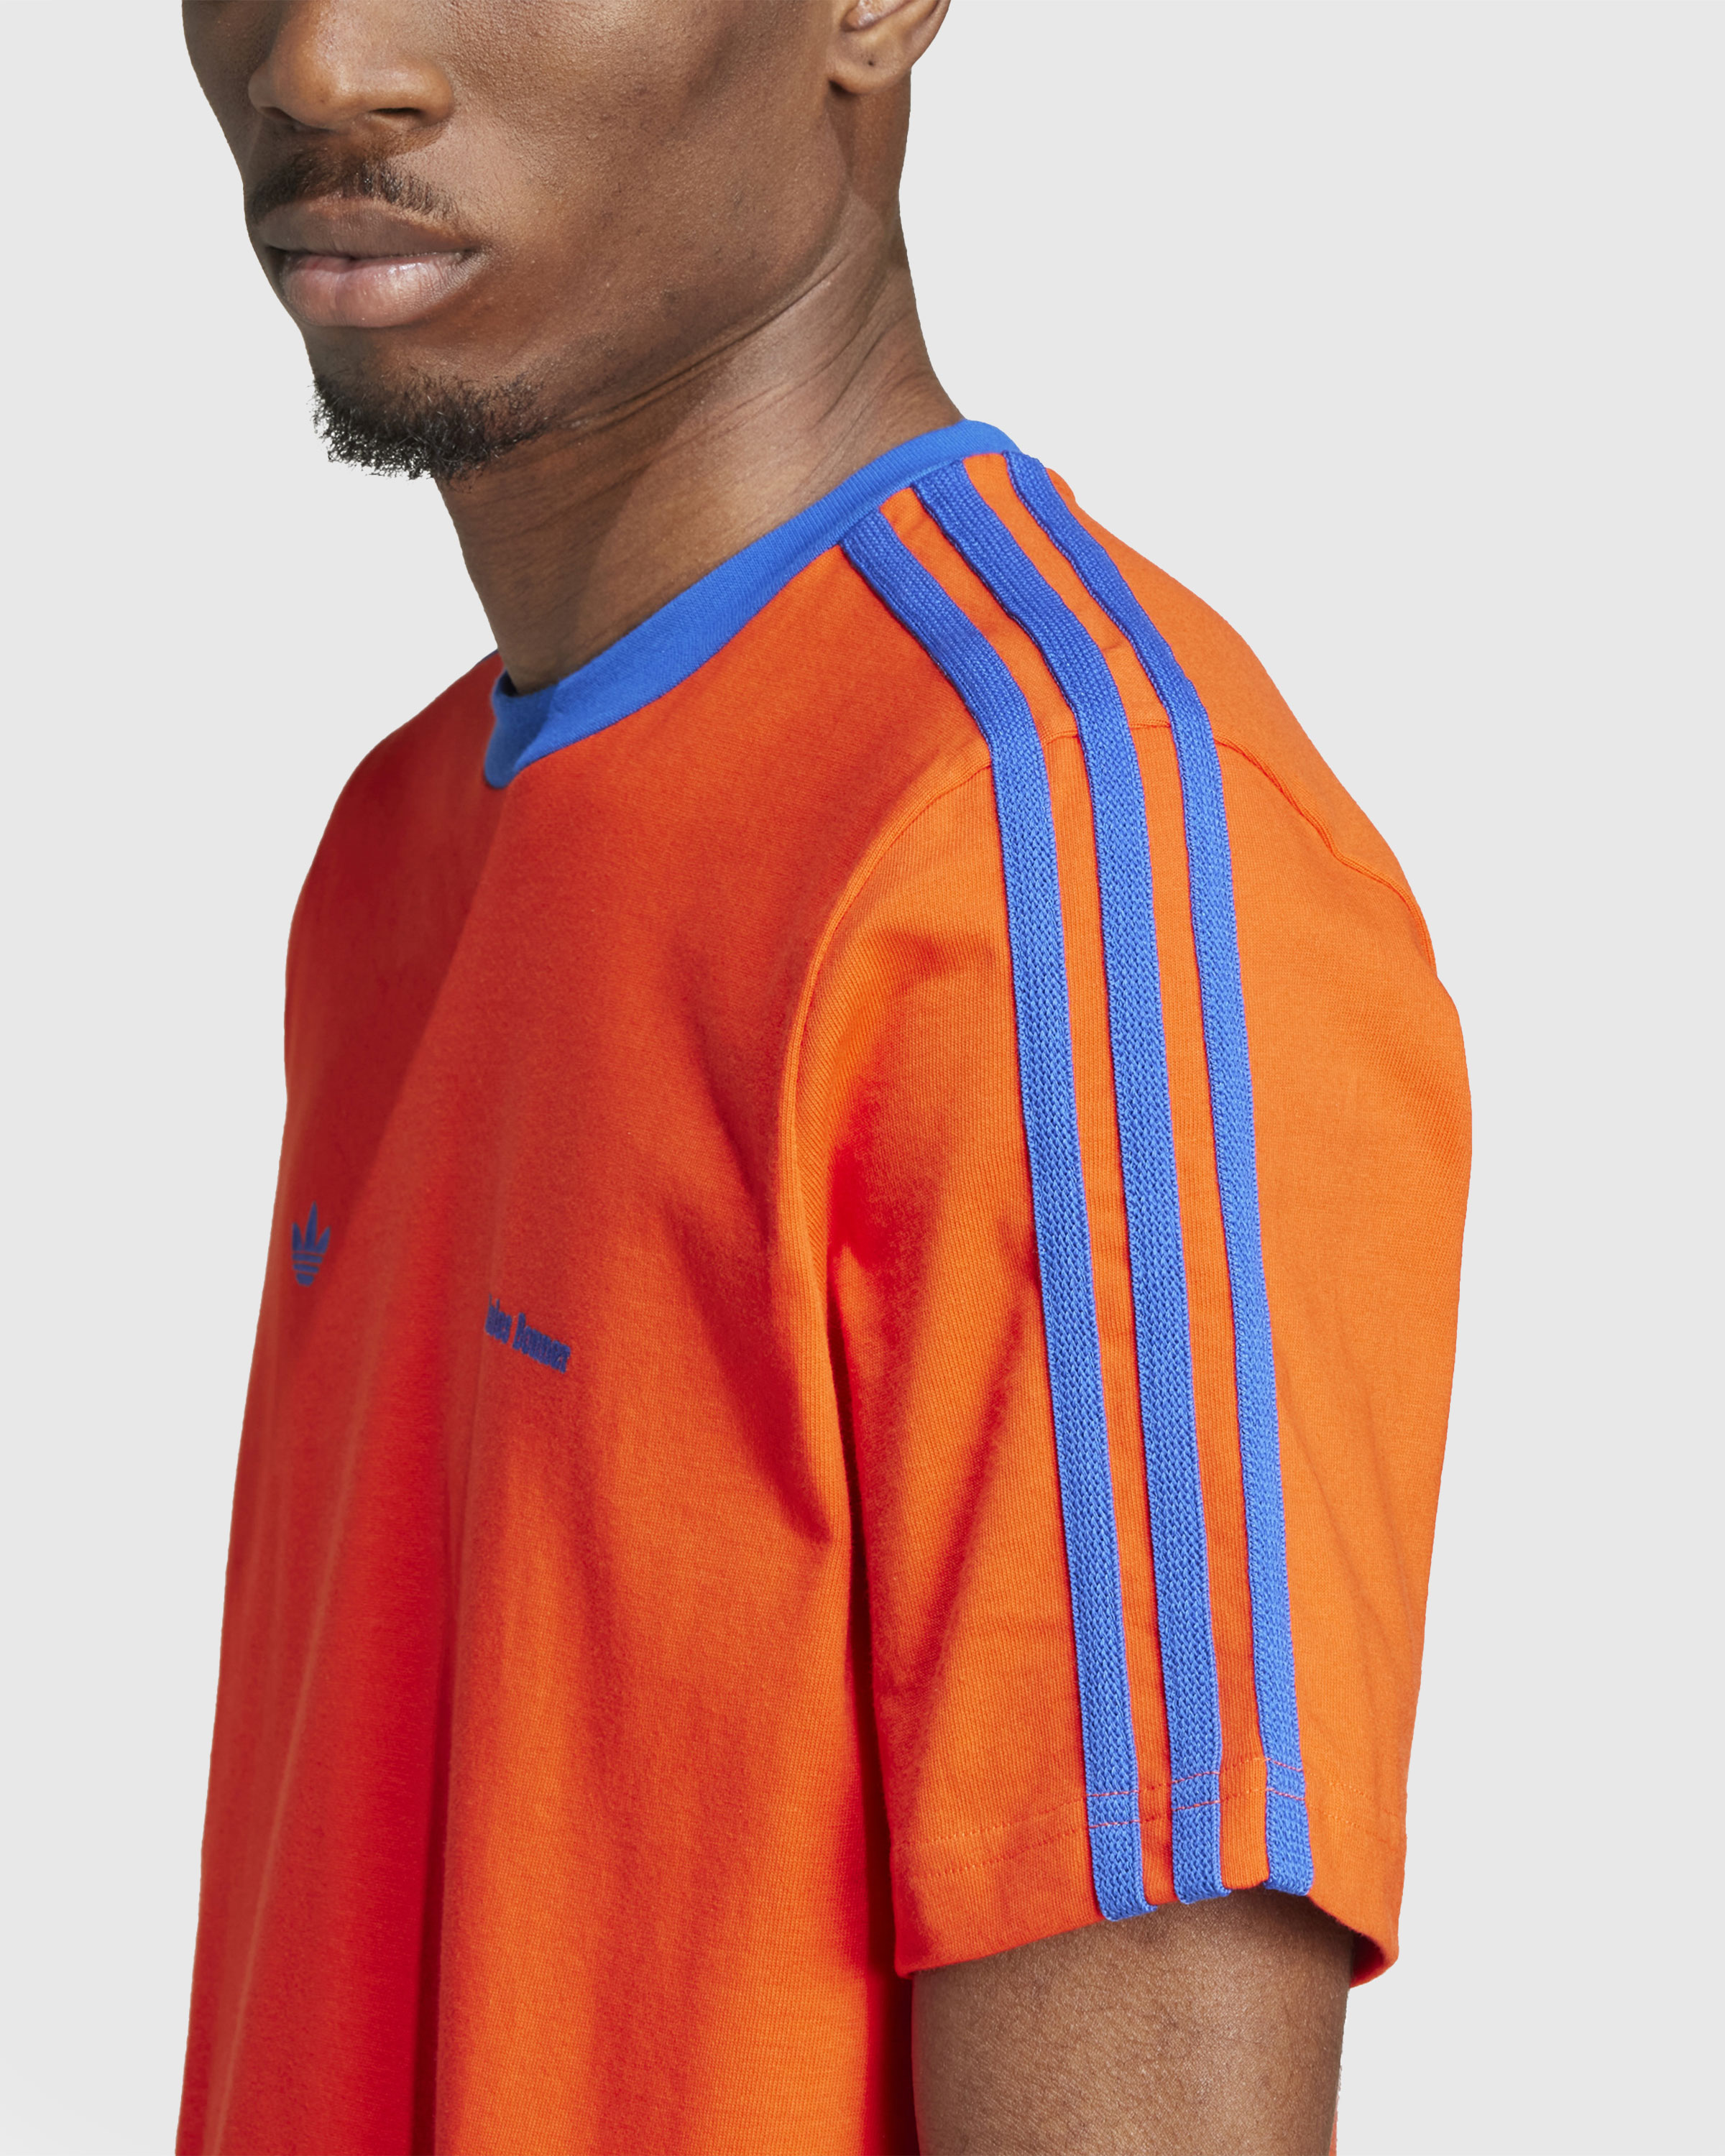 Adidas x Wales Bonner – Short-Sleeve Tee Bold Orange/Team Royal Blue - T-Shirts - Orange - Image 5